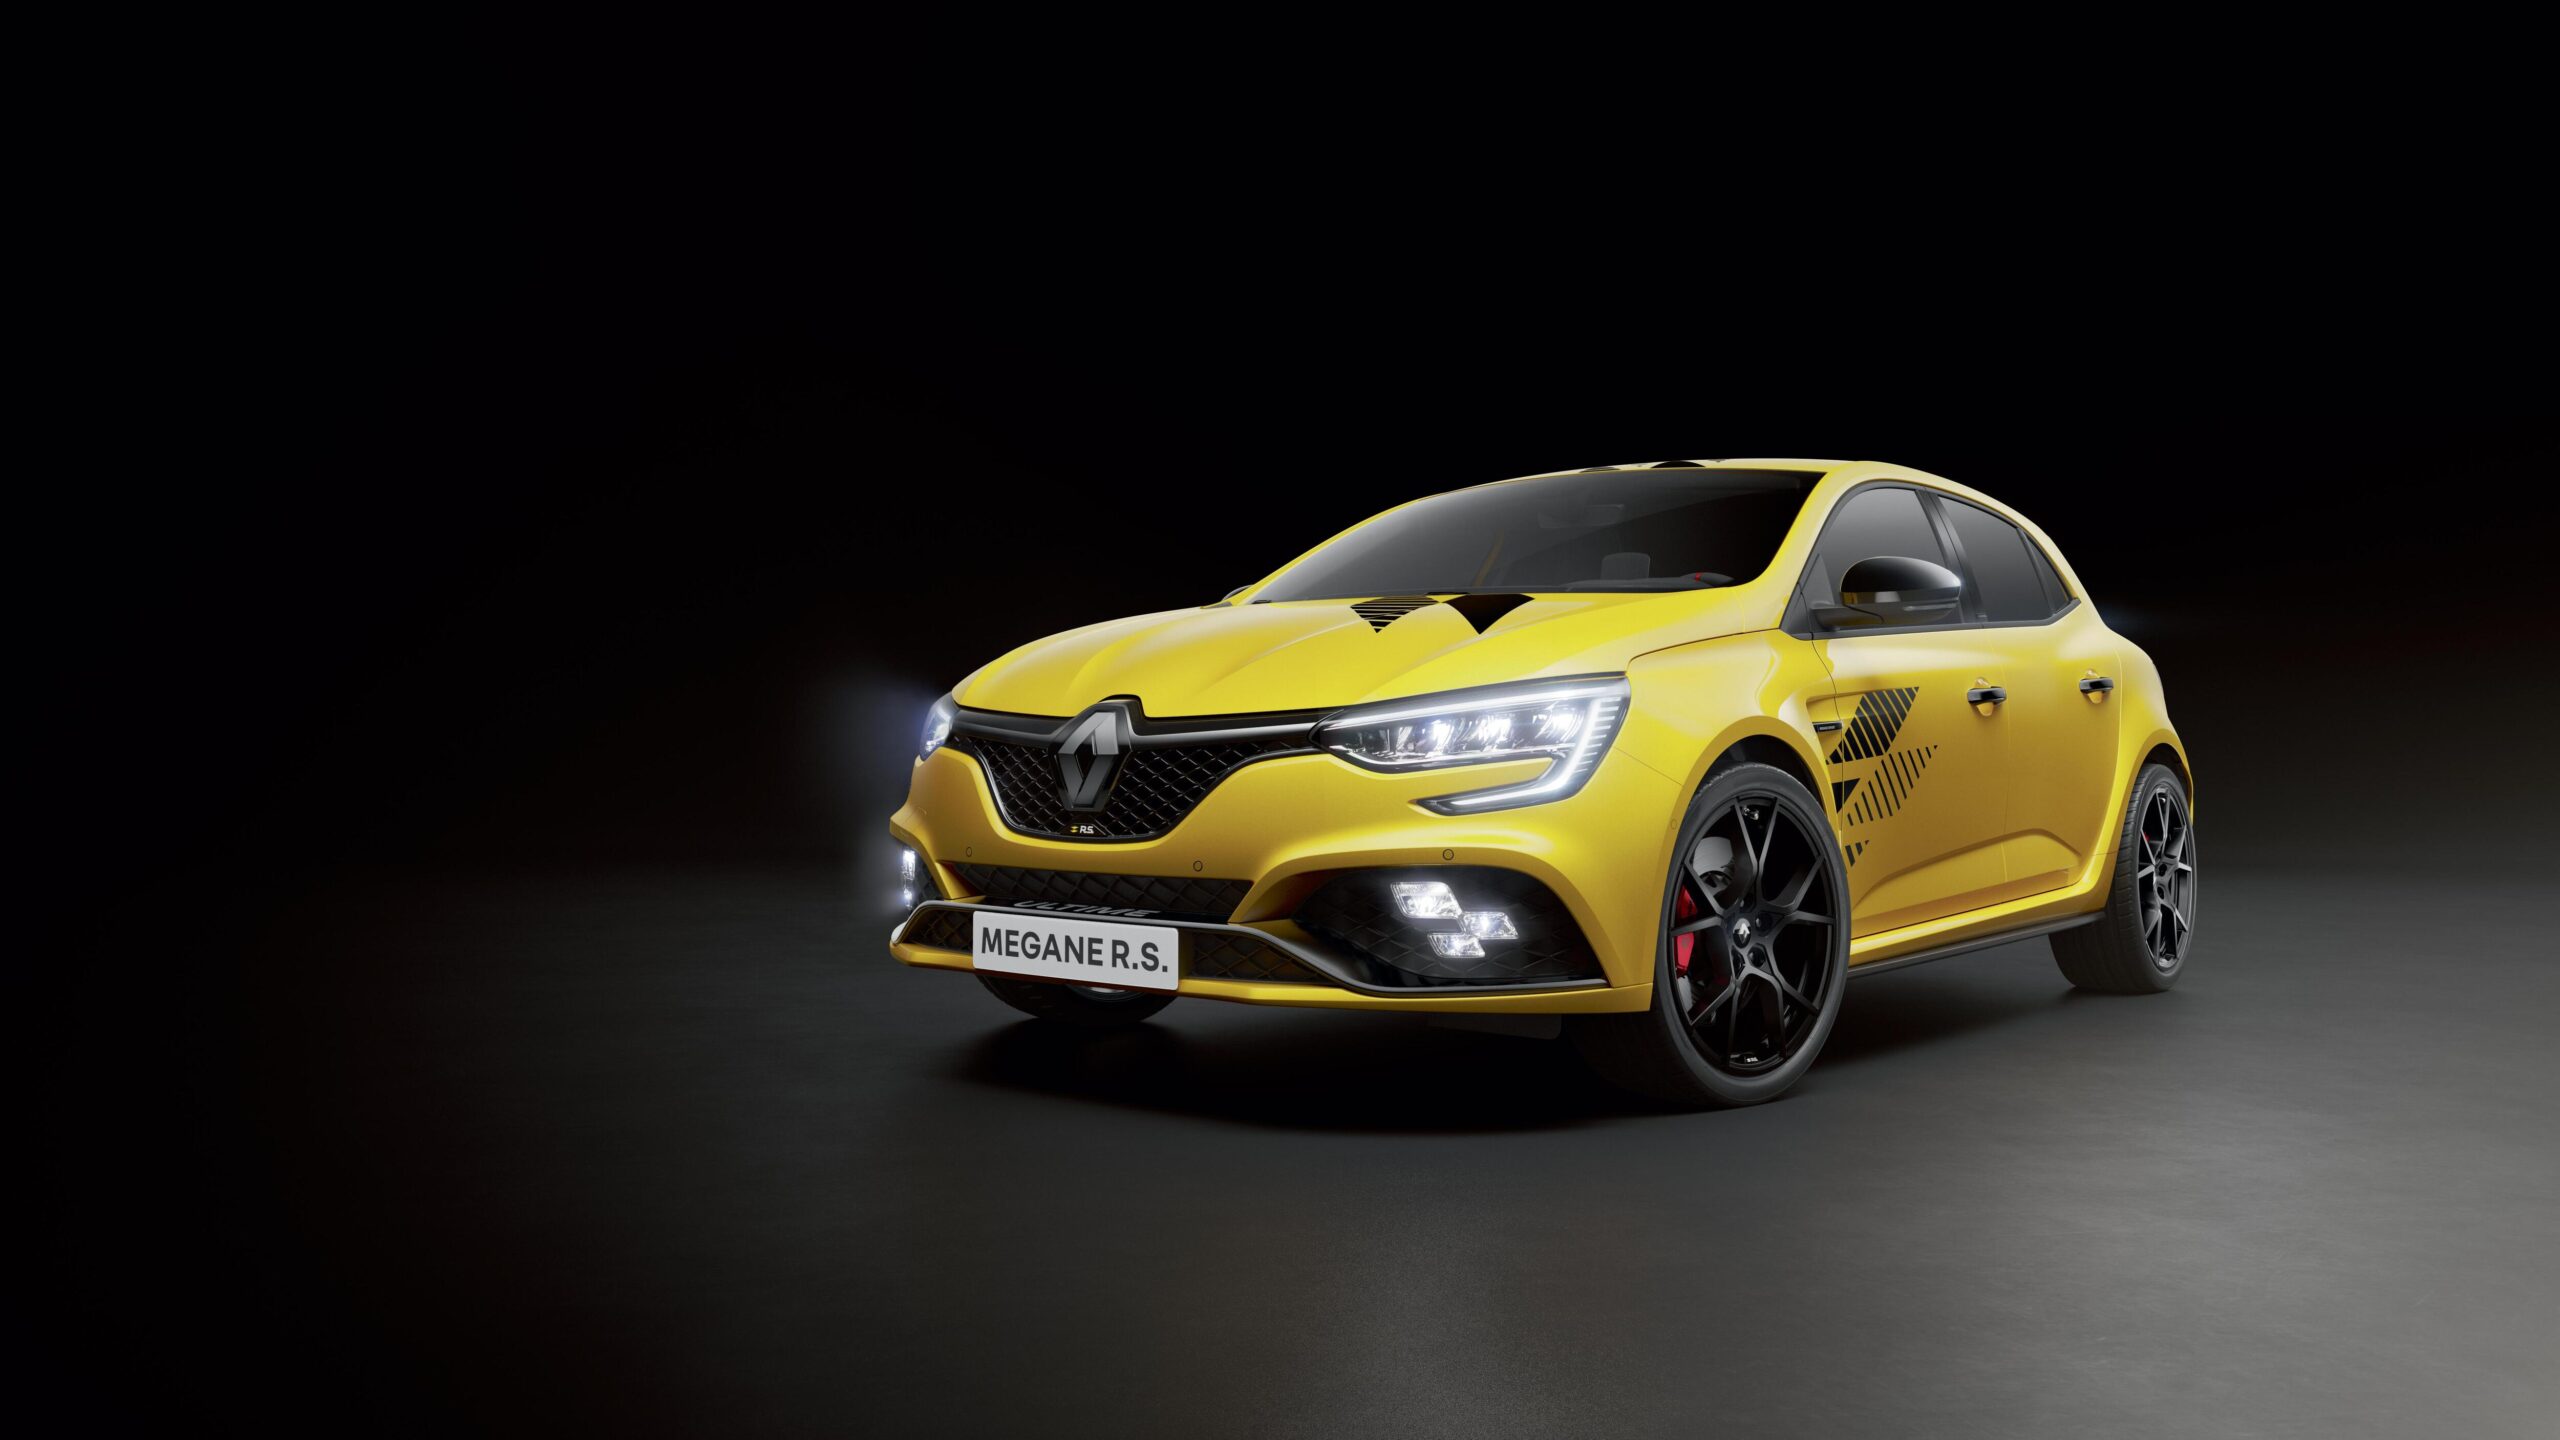 Mégane R.S. Ultime una edición limitada para celebrar un modelo emblemático en la historia de Renault Sport